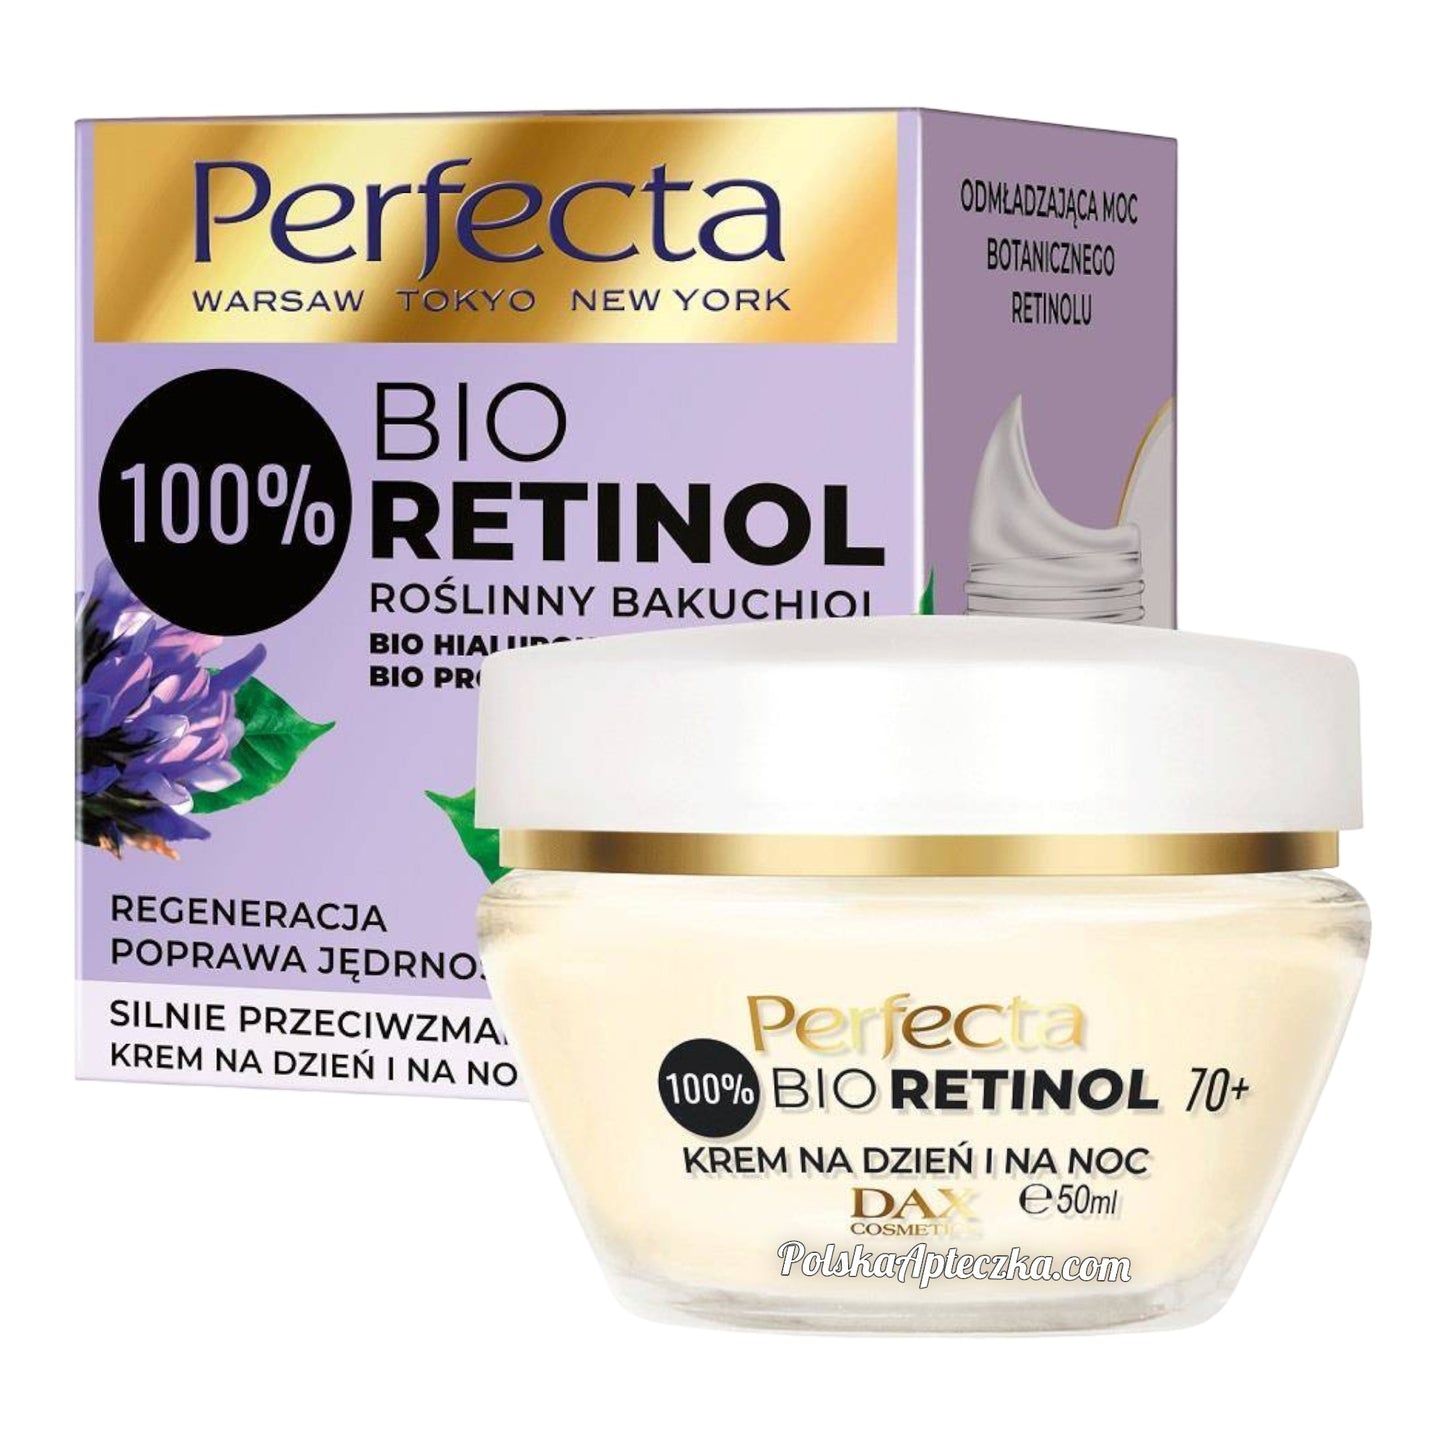 Perfecta, Bio Retinol 70+ krem regenerująco-ujędrniający na dzień i noc  50ml